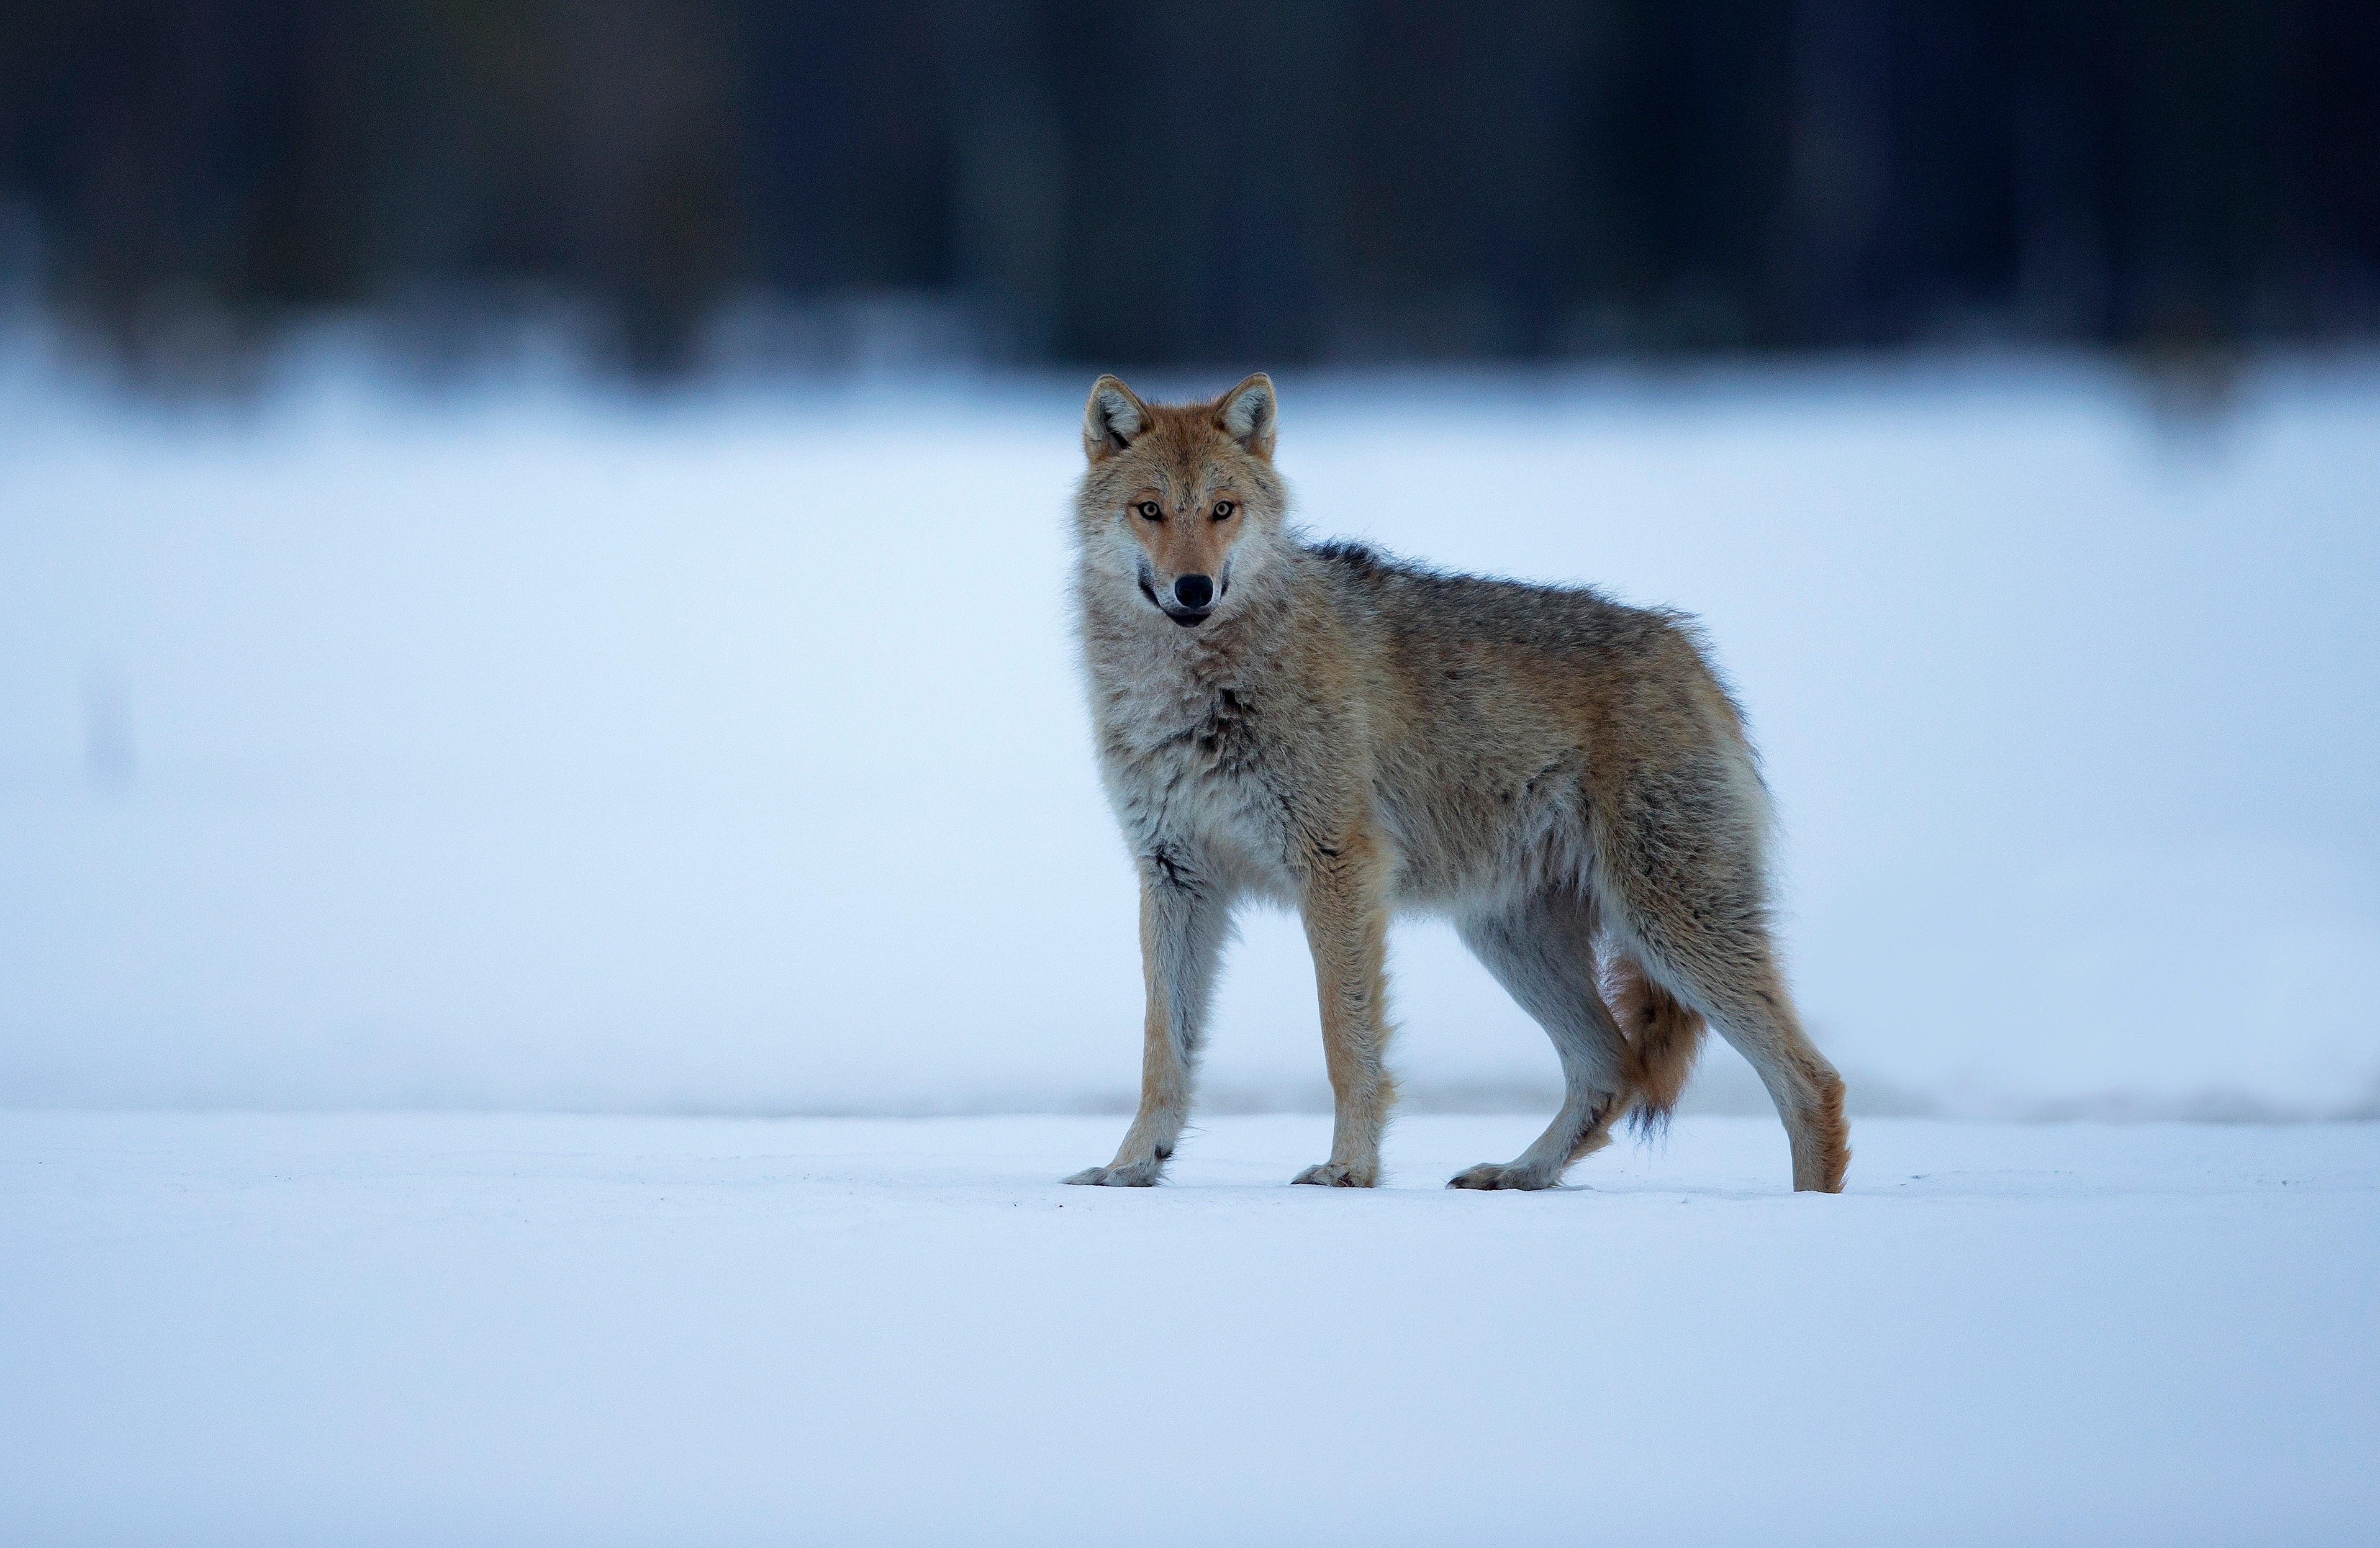 Susi Suomessa on maan vihatuin, ihailluin ja poliittisin eläin | Apu